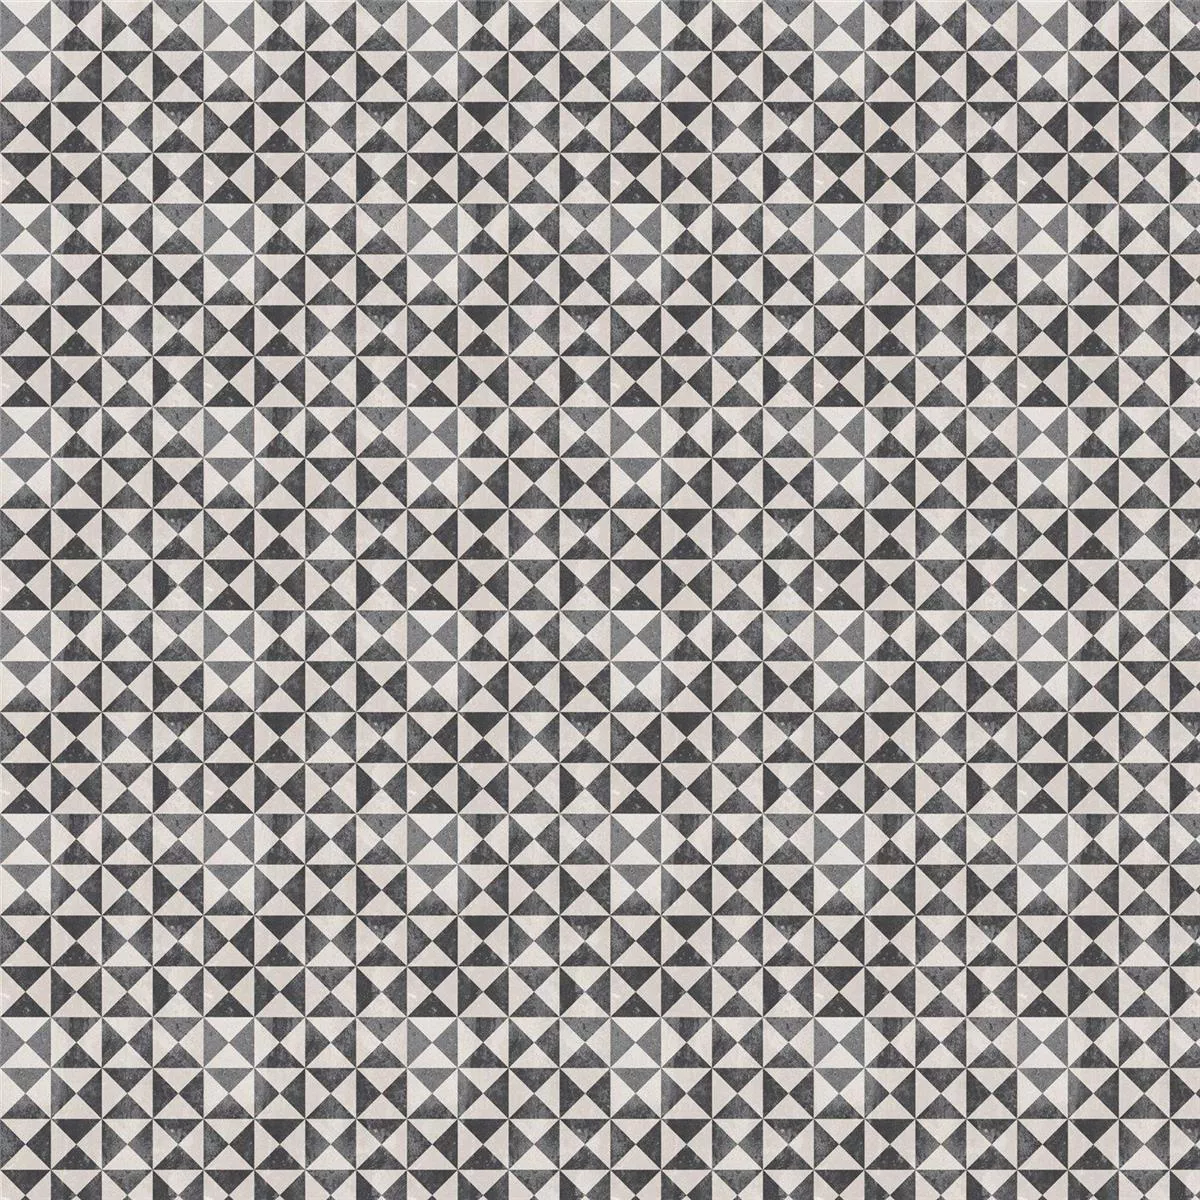 Échantillon Carreaux De Ciment Optique Rétro Toulon Oteiza 18,6x18,6cm